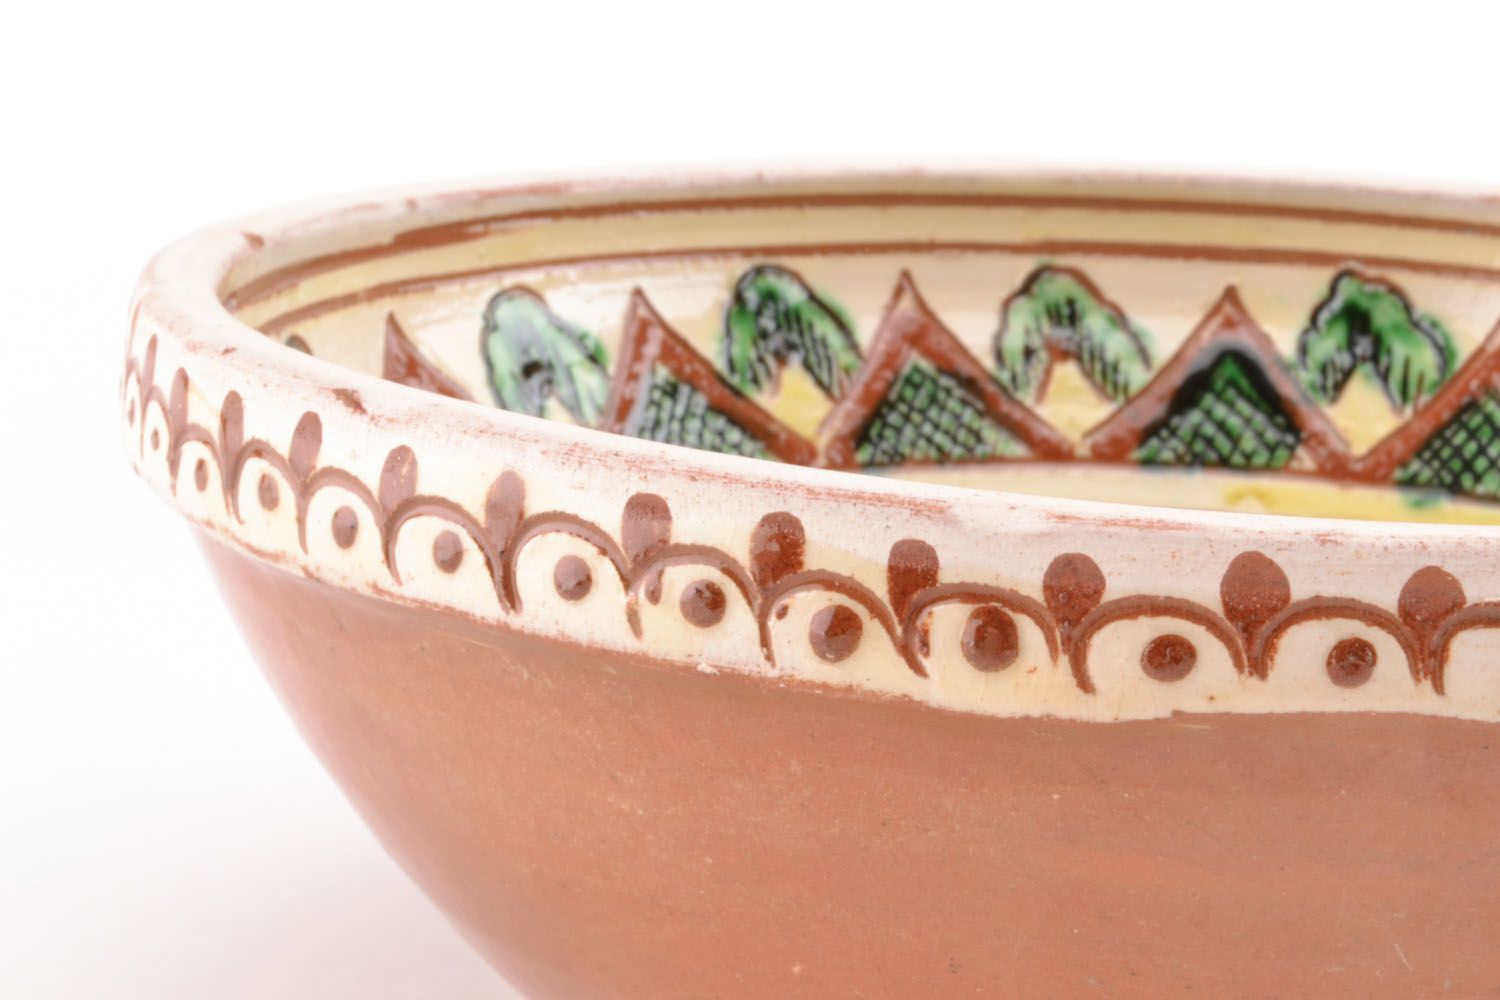 Ceramic bowl photo 2